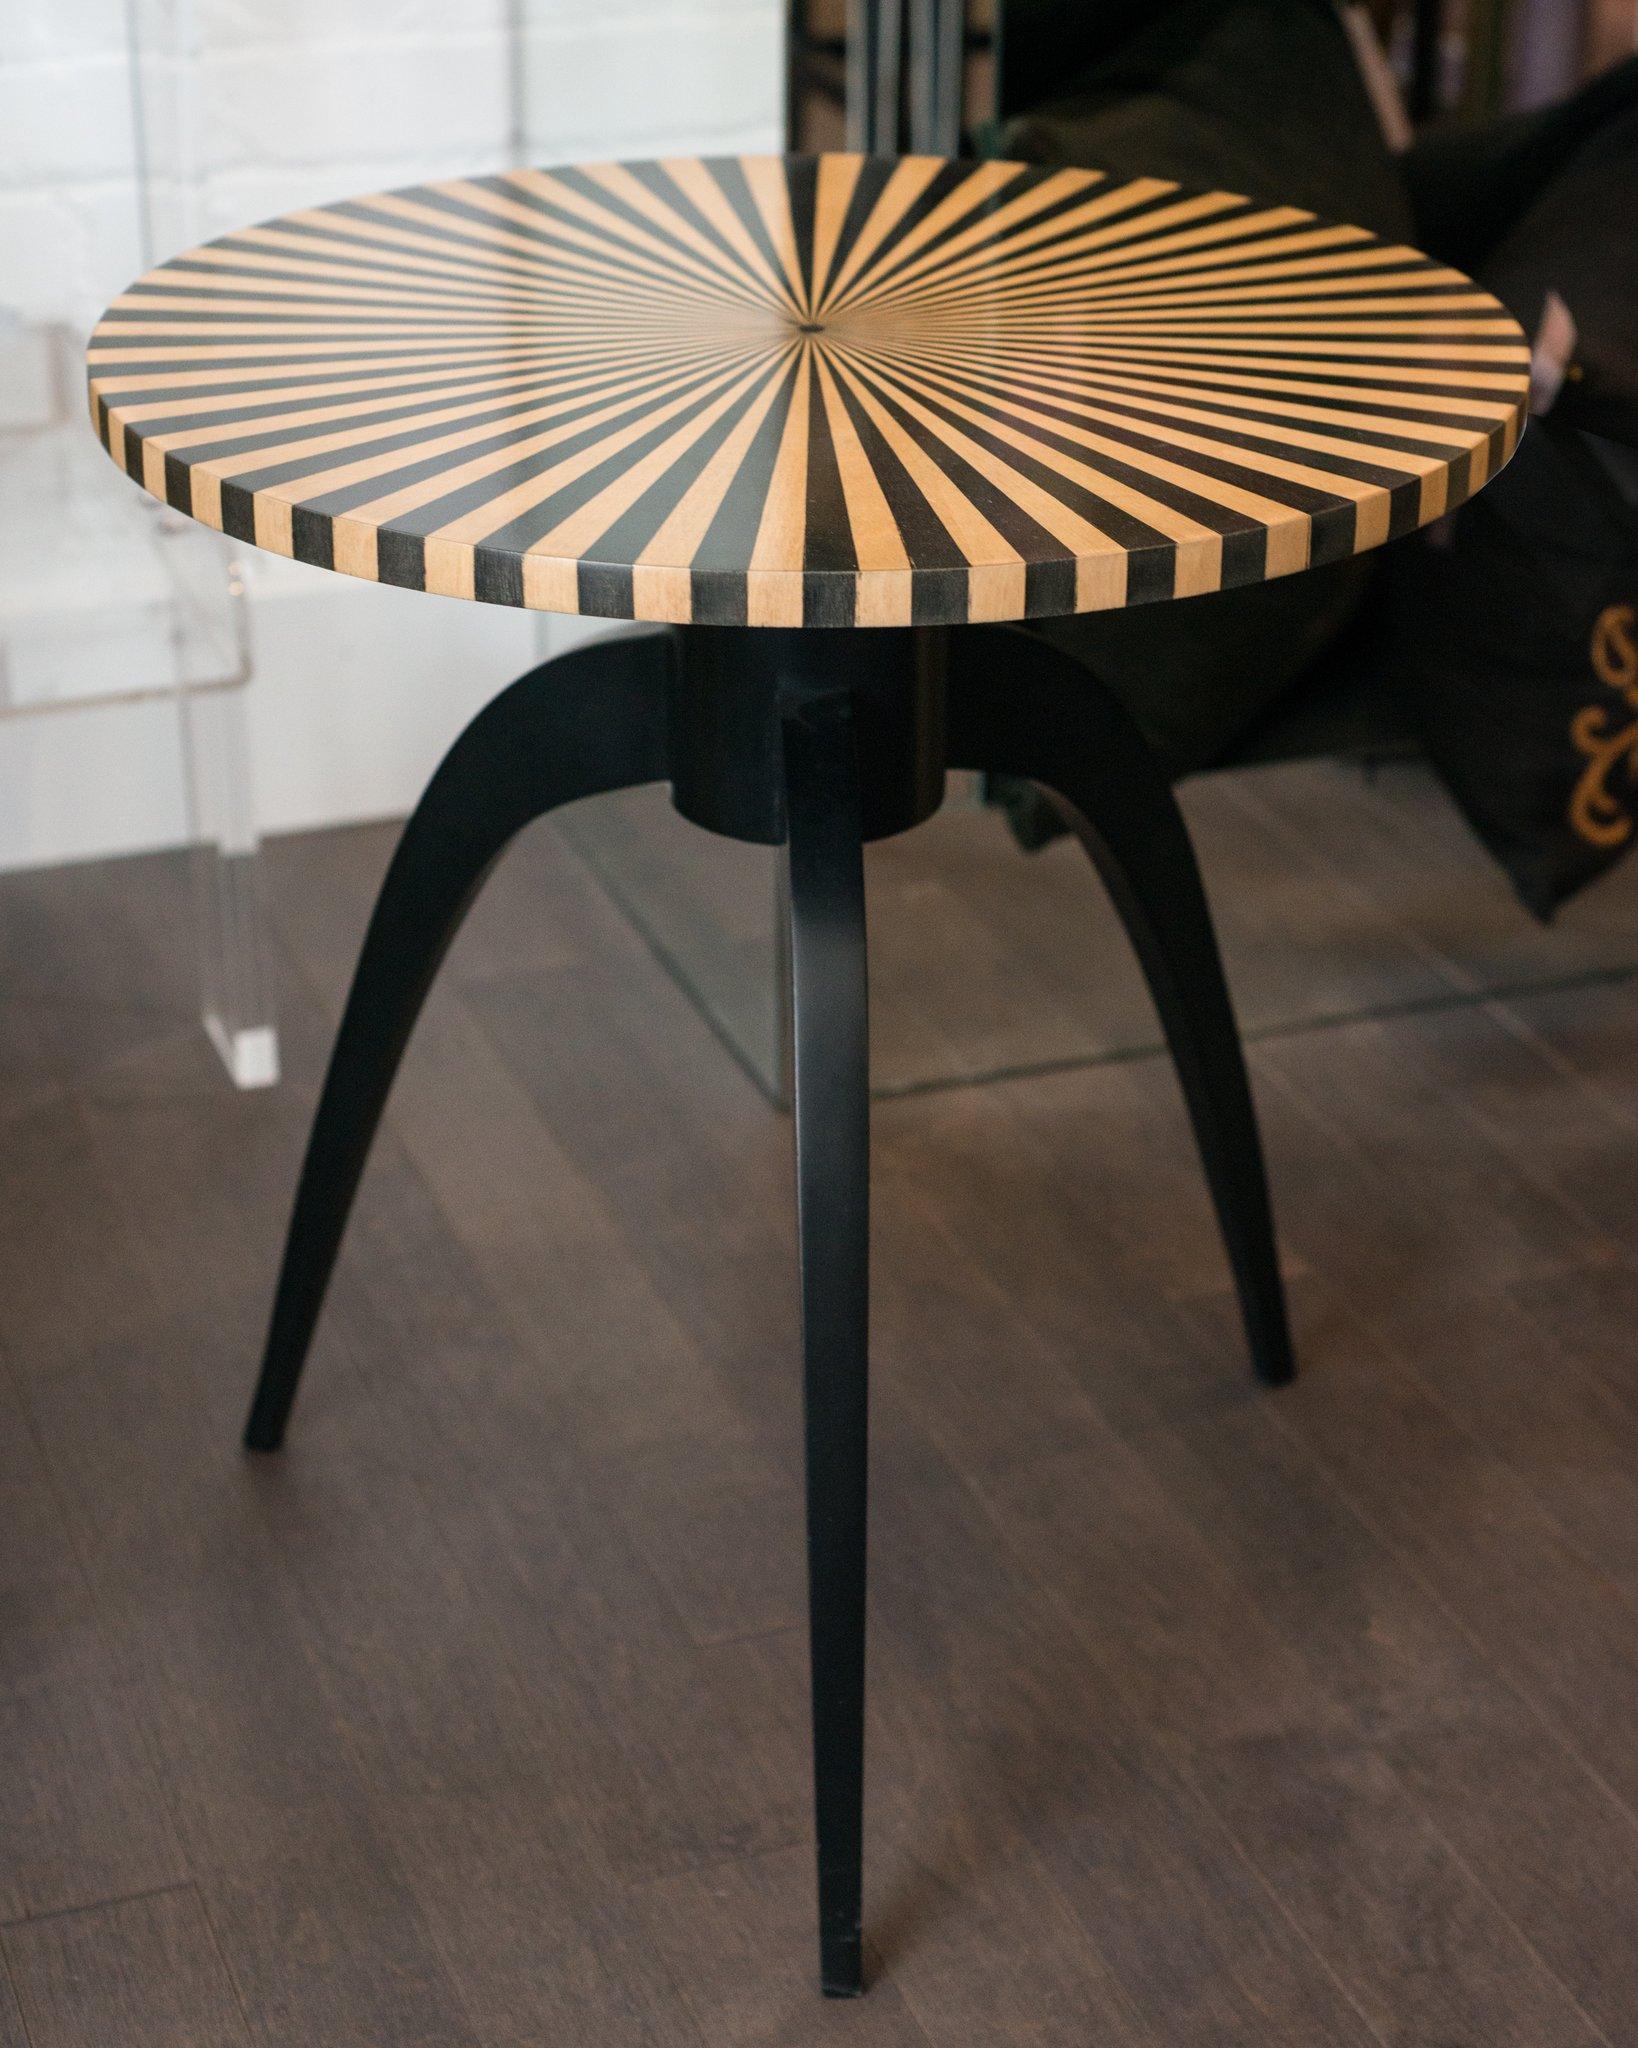 Une table contemporaine magnifiquement réalisée en bois de satin incrusté, un clin d'œil à Fornasetti. L'alternance de panneaux incrustés crée une géométrie forte dans un ton naturel.